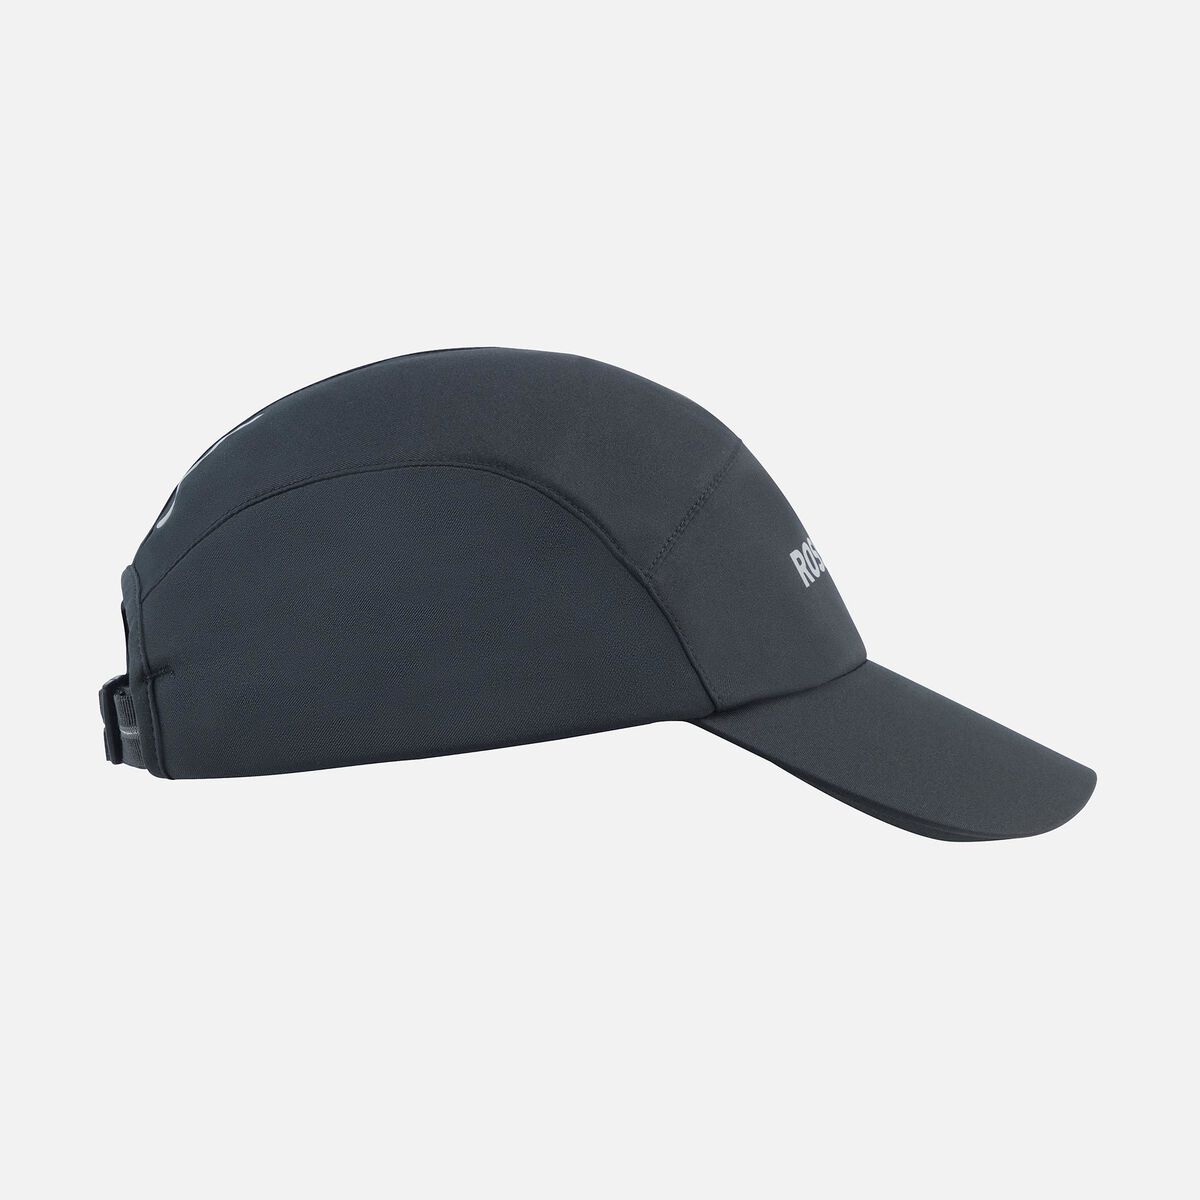 Unisex Active cap black